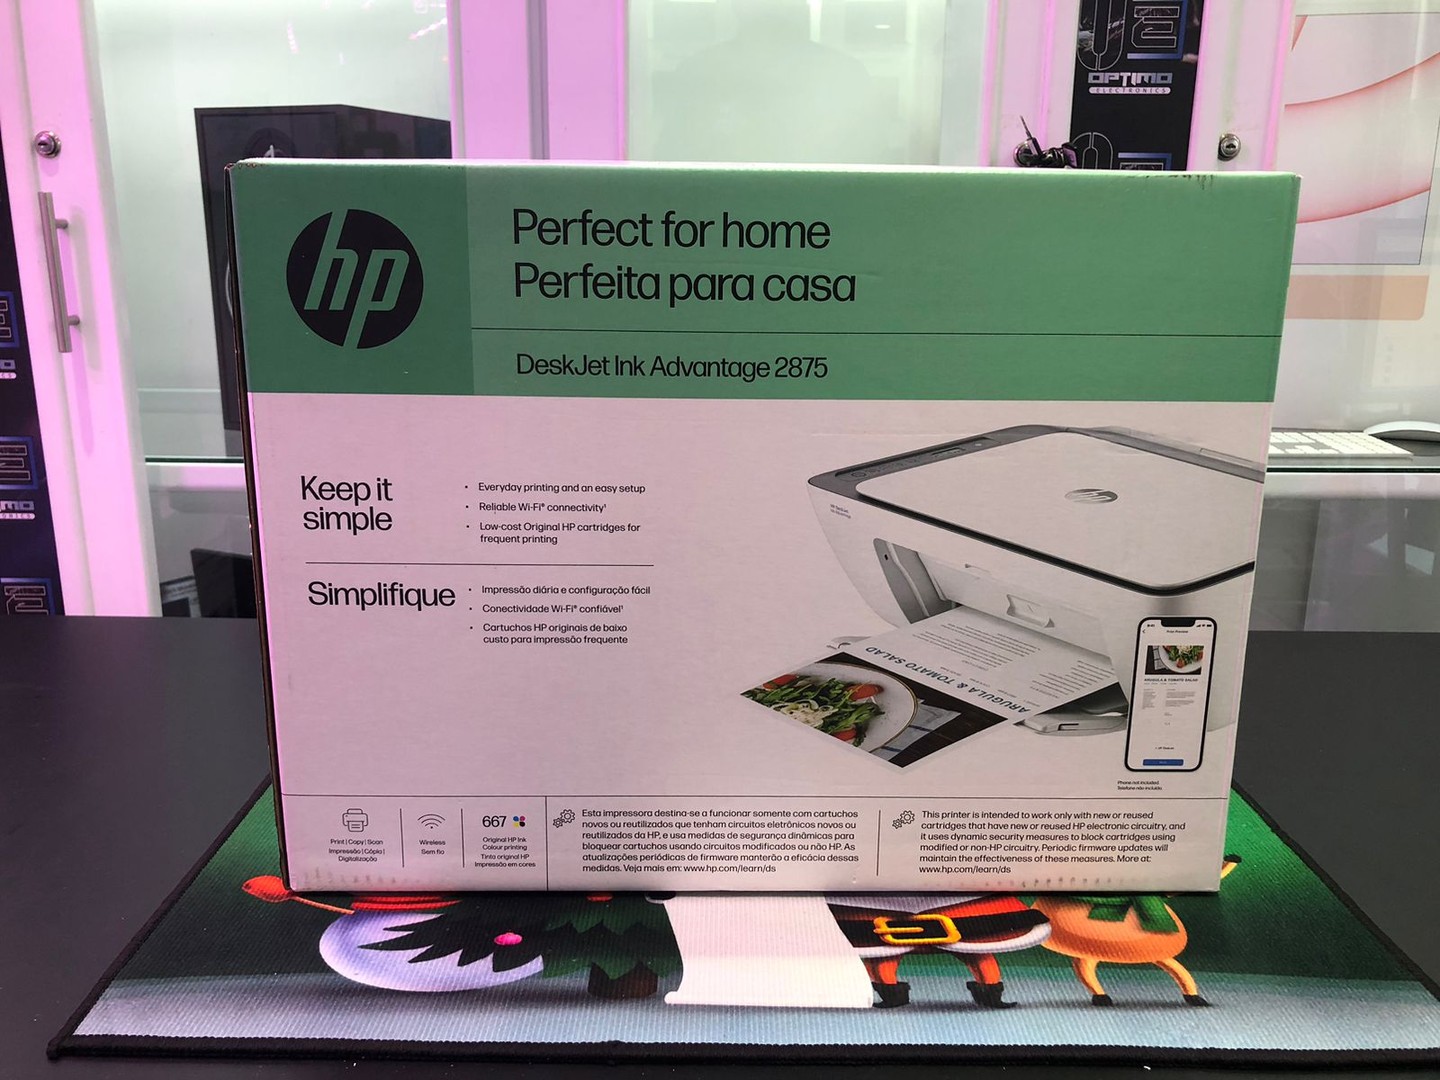 impresoras y scanners - Impresora Multifunción a wifi y Bluetooth HP 2875 Todo en 1, Nueva y Sellada 1